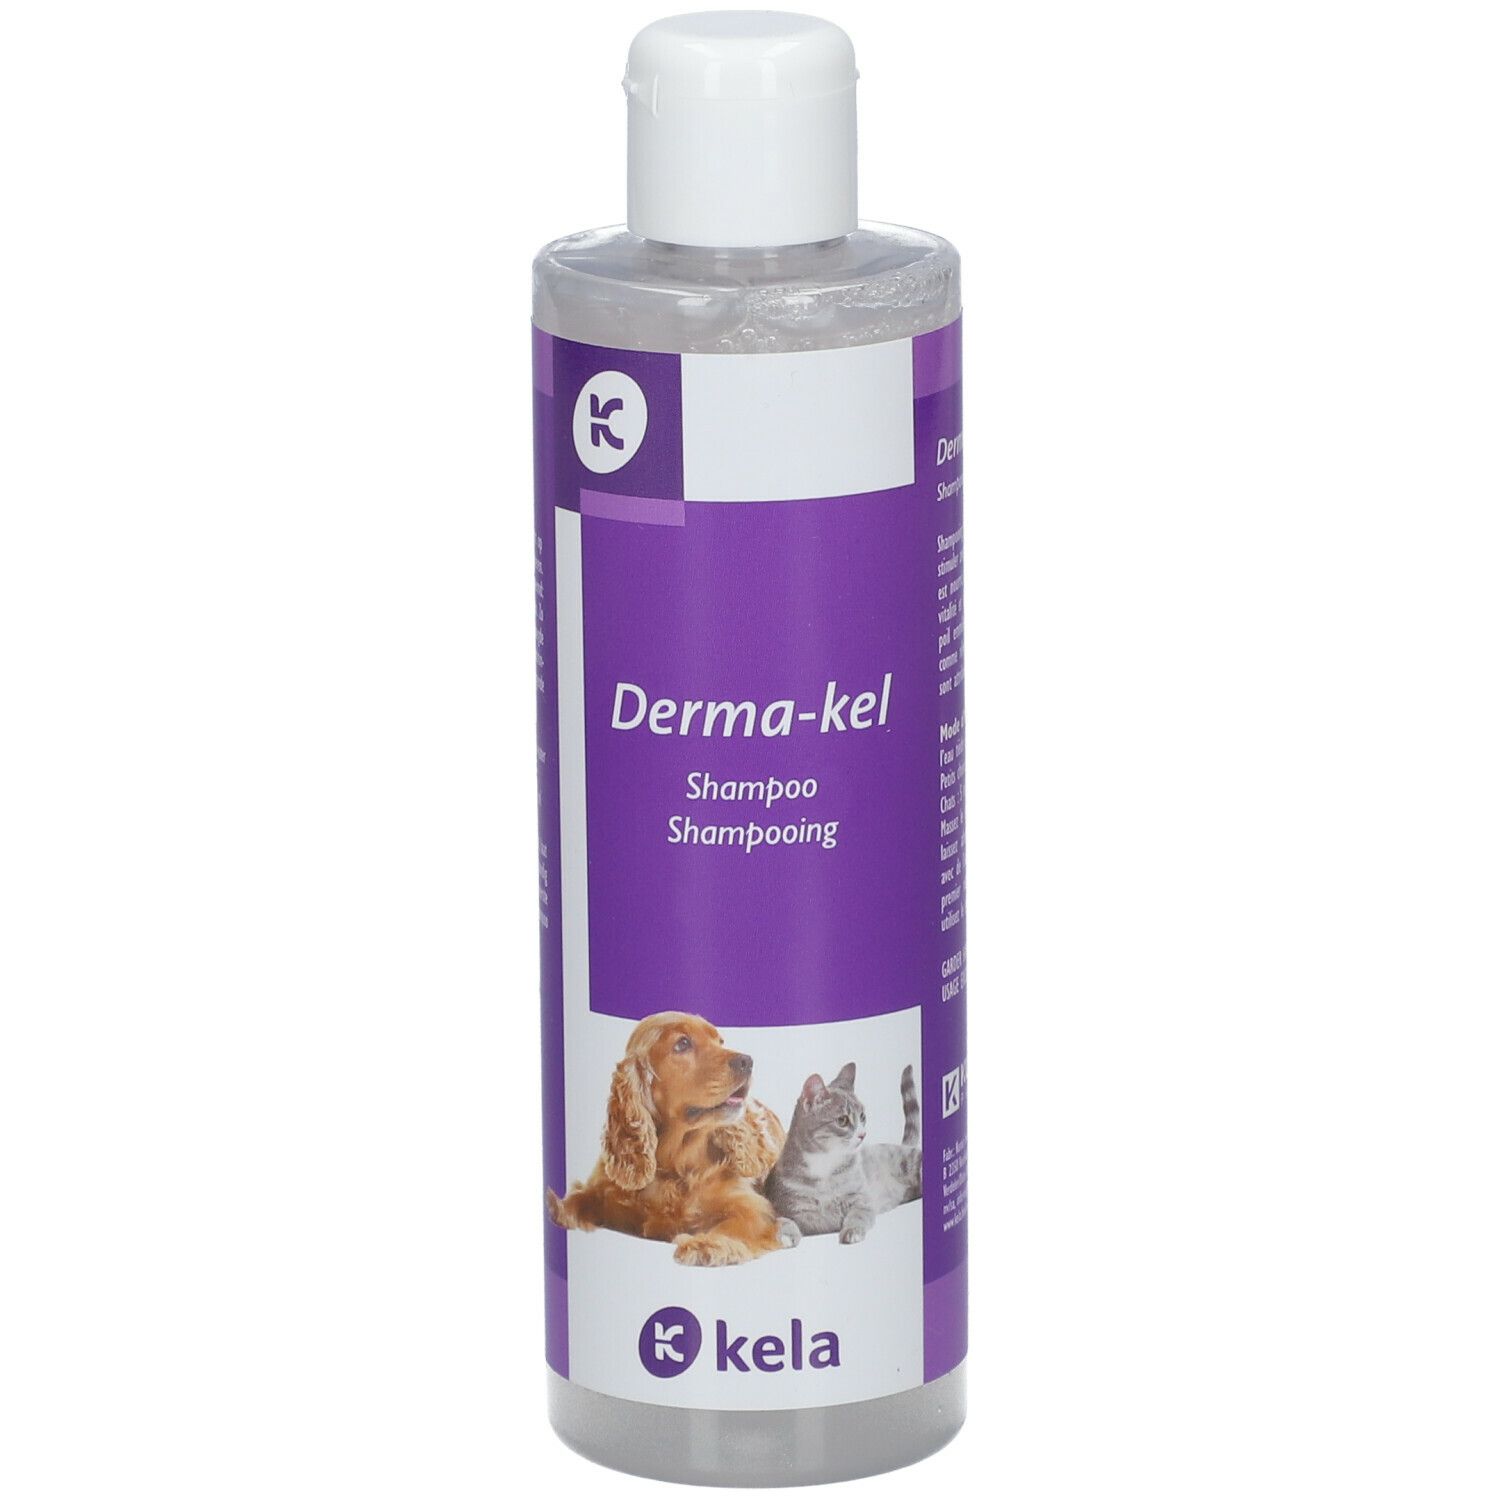 Kela Derma-kel Shampoo